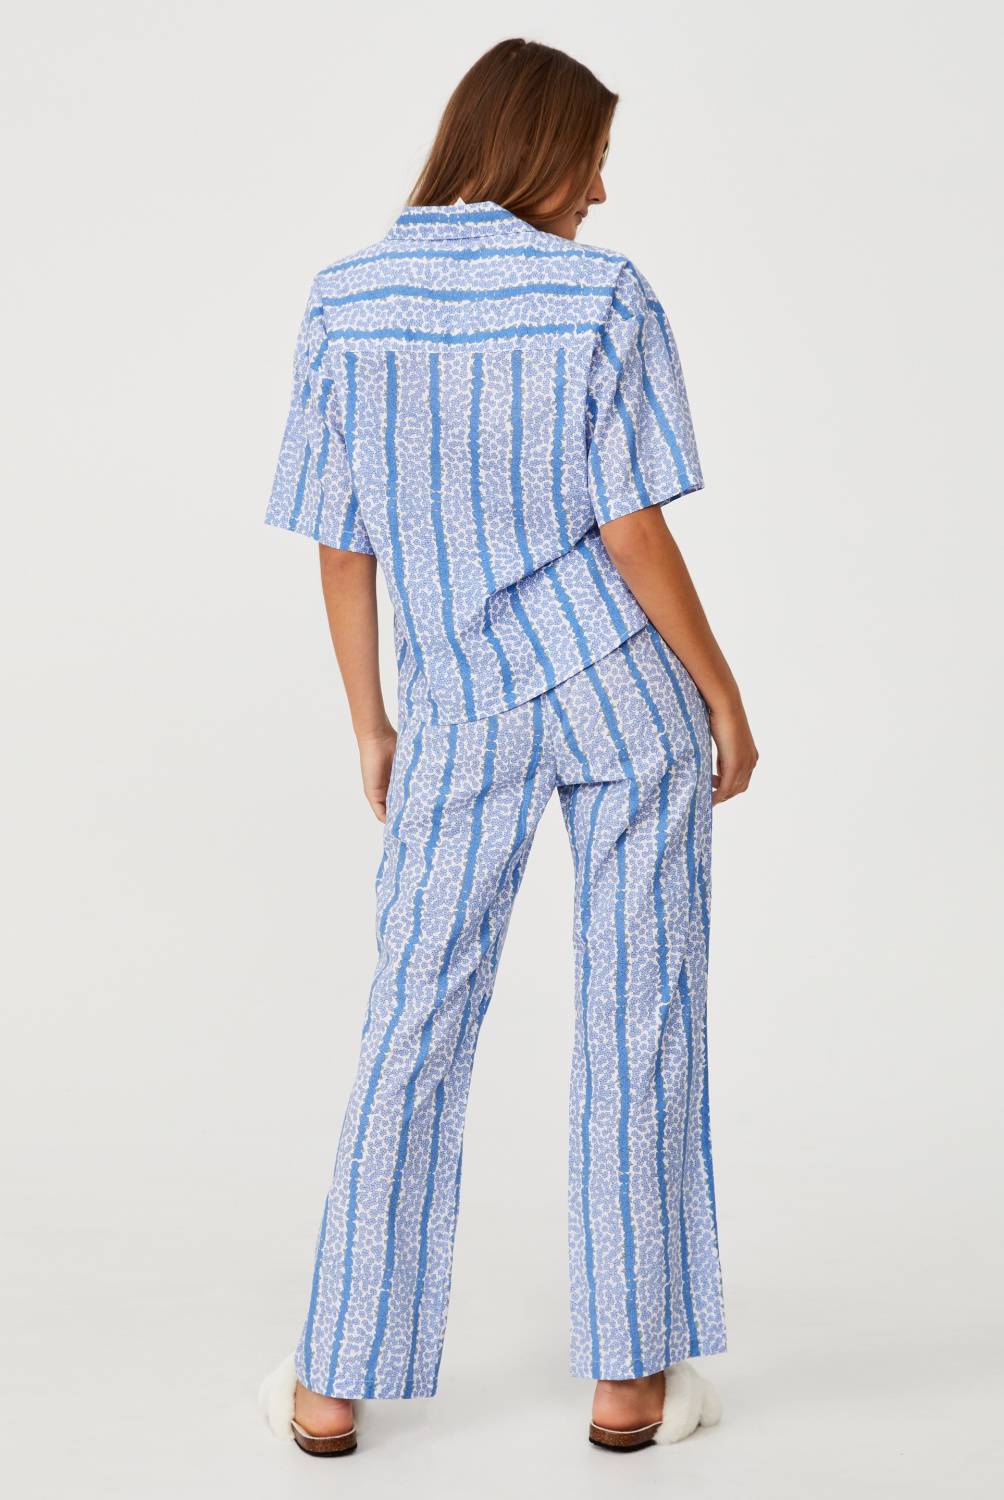 COTTON ON - Cotton On Set Pijama Mujer